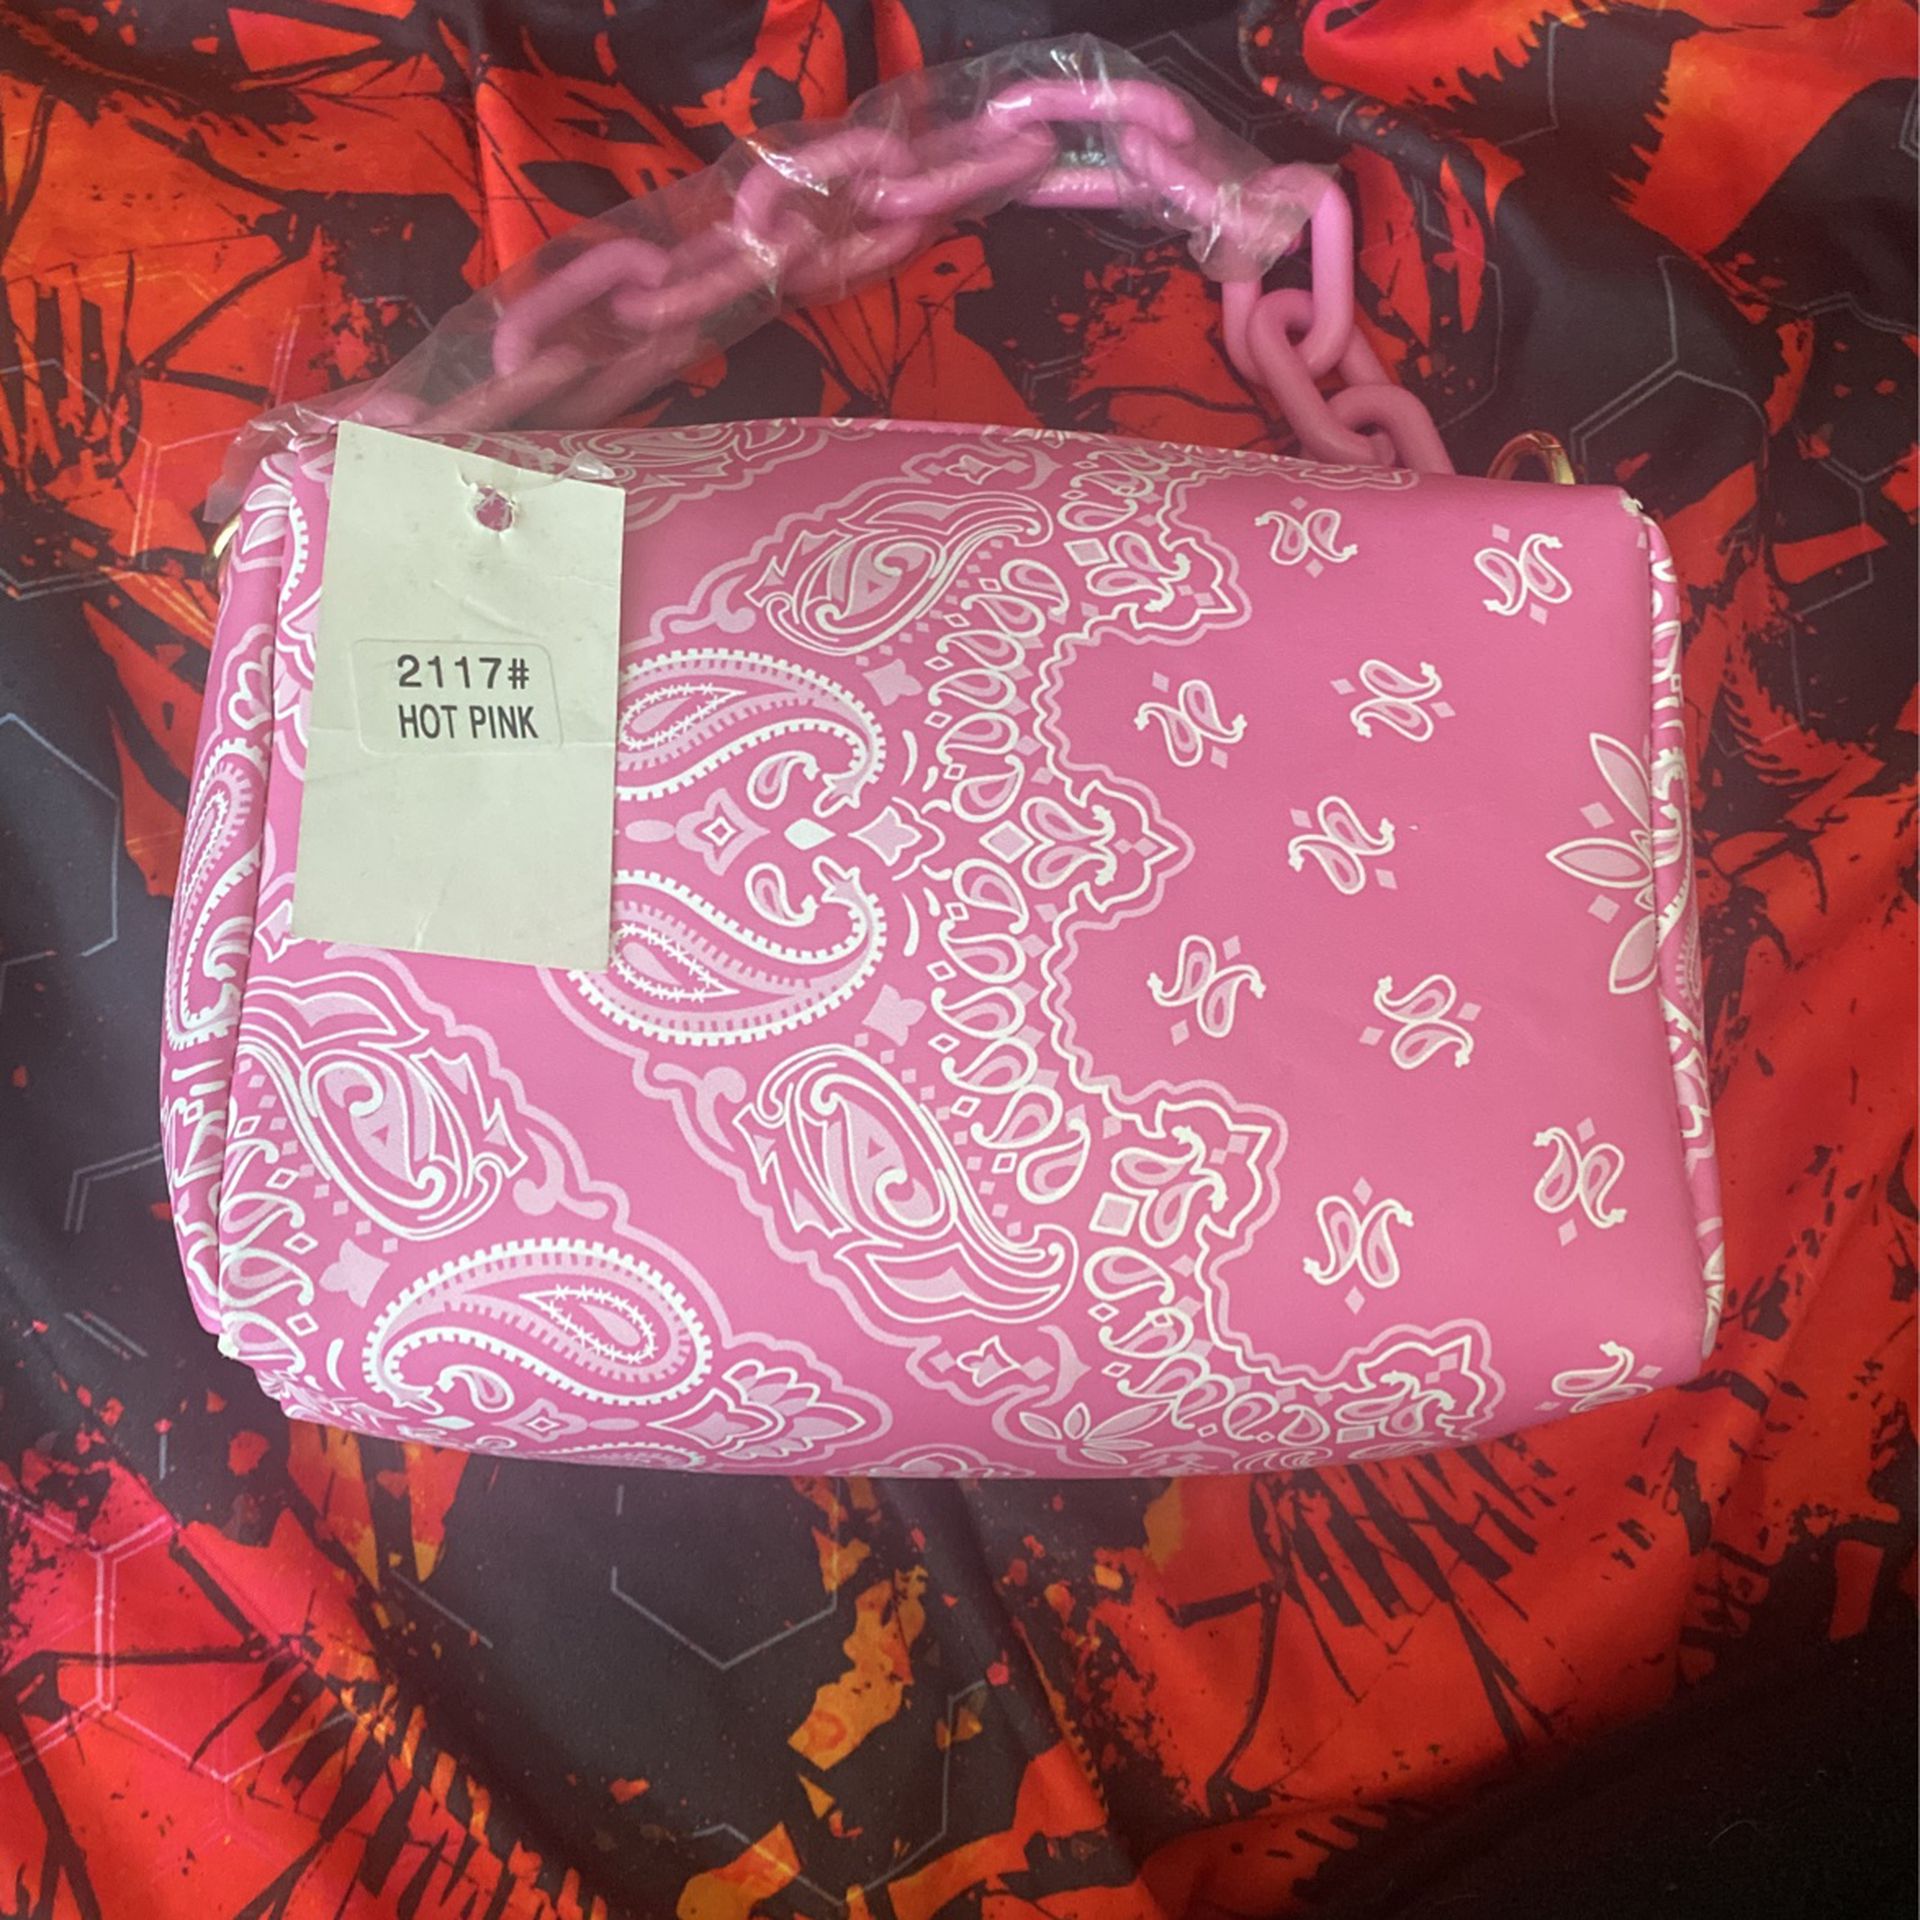 Hot Pink Bandanna Bag 